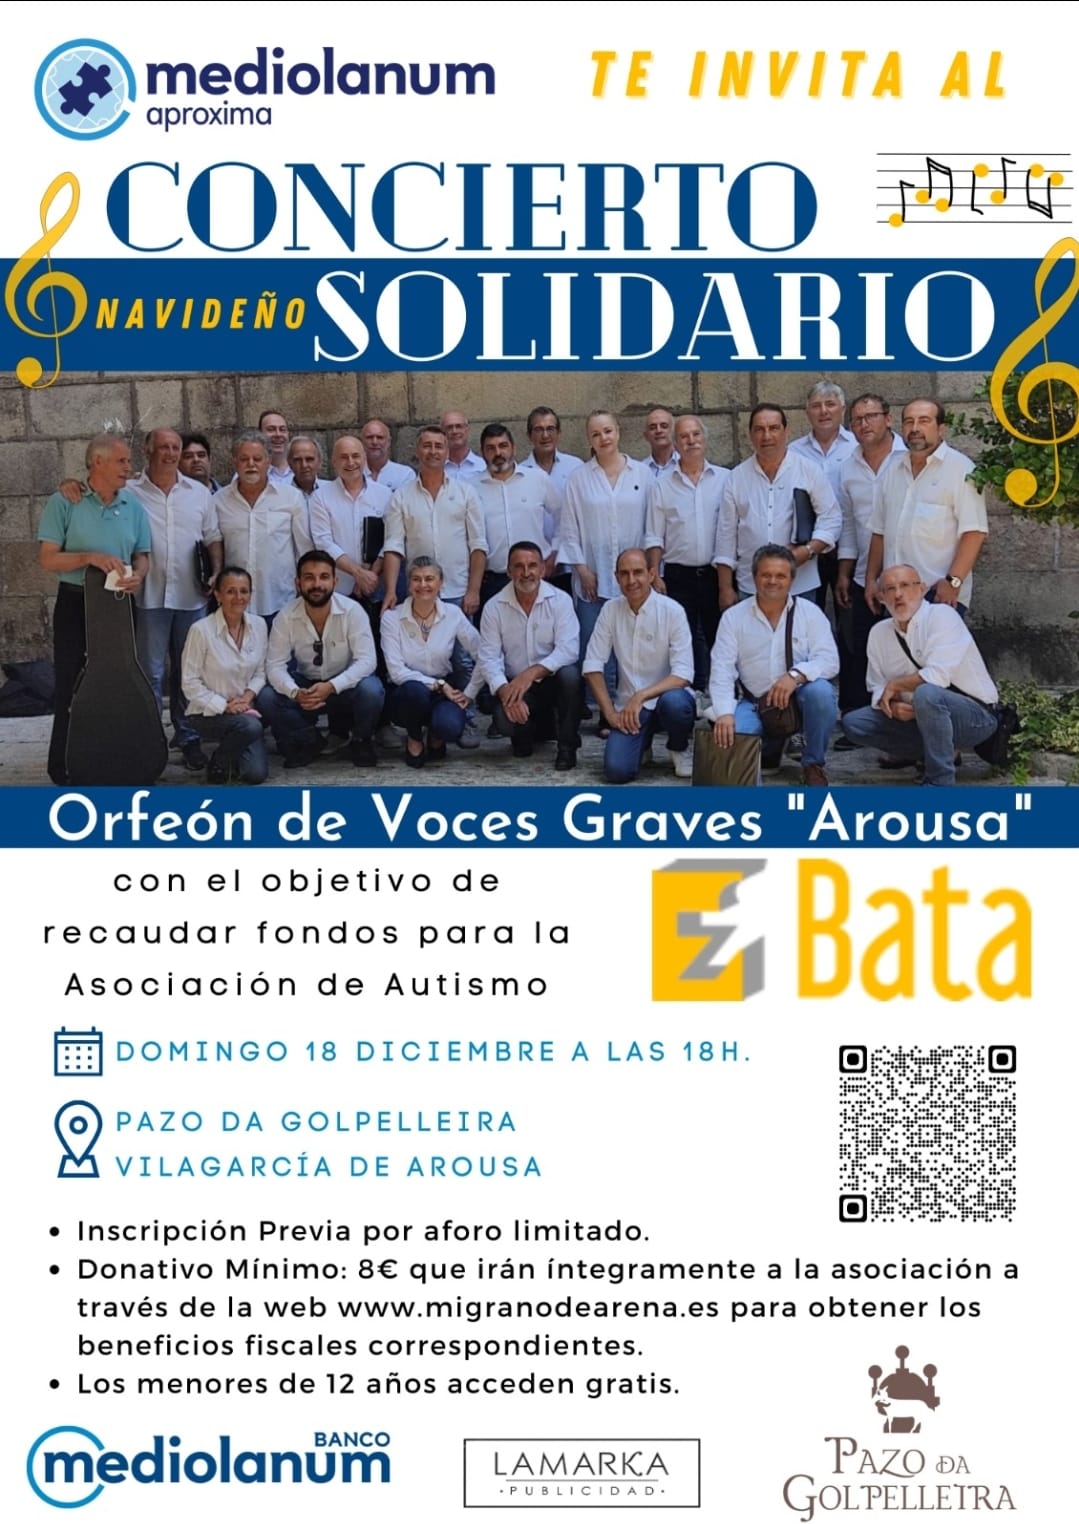 Disfruta de un concierto navideño solidario el 18 de diciembre en el pazo da Golpelleira.